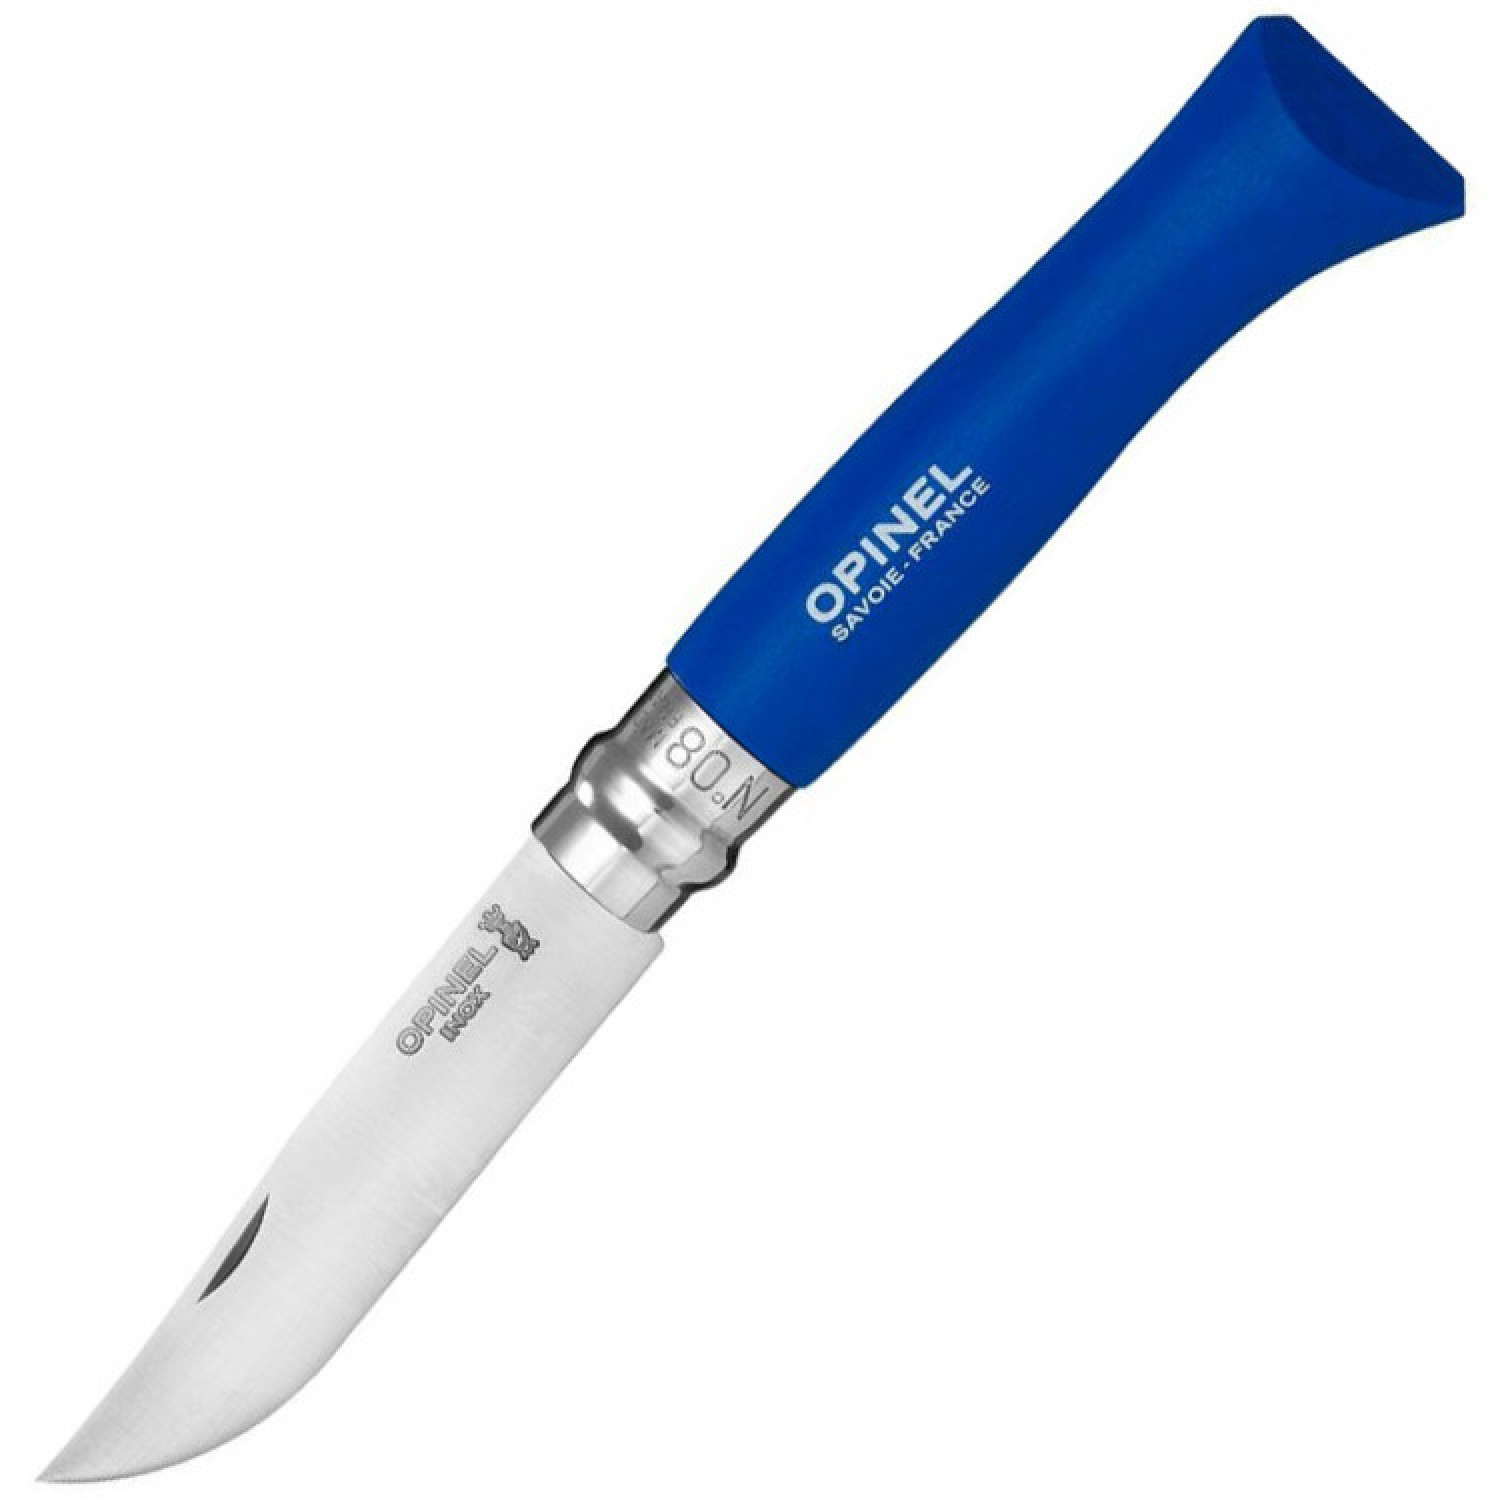 Складной Нож Opinel №8, Trekking, нержавеющая сталь Sandvik 12C27, бук, синий, с чехлом, 001891